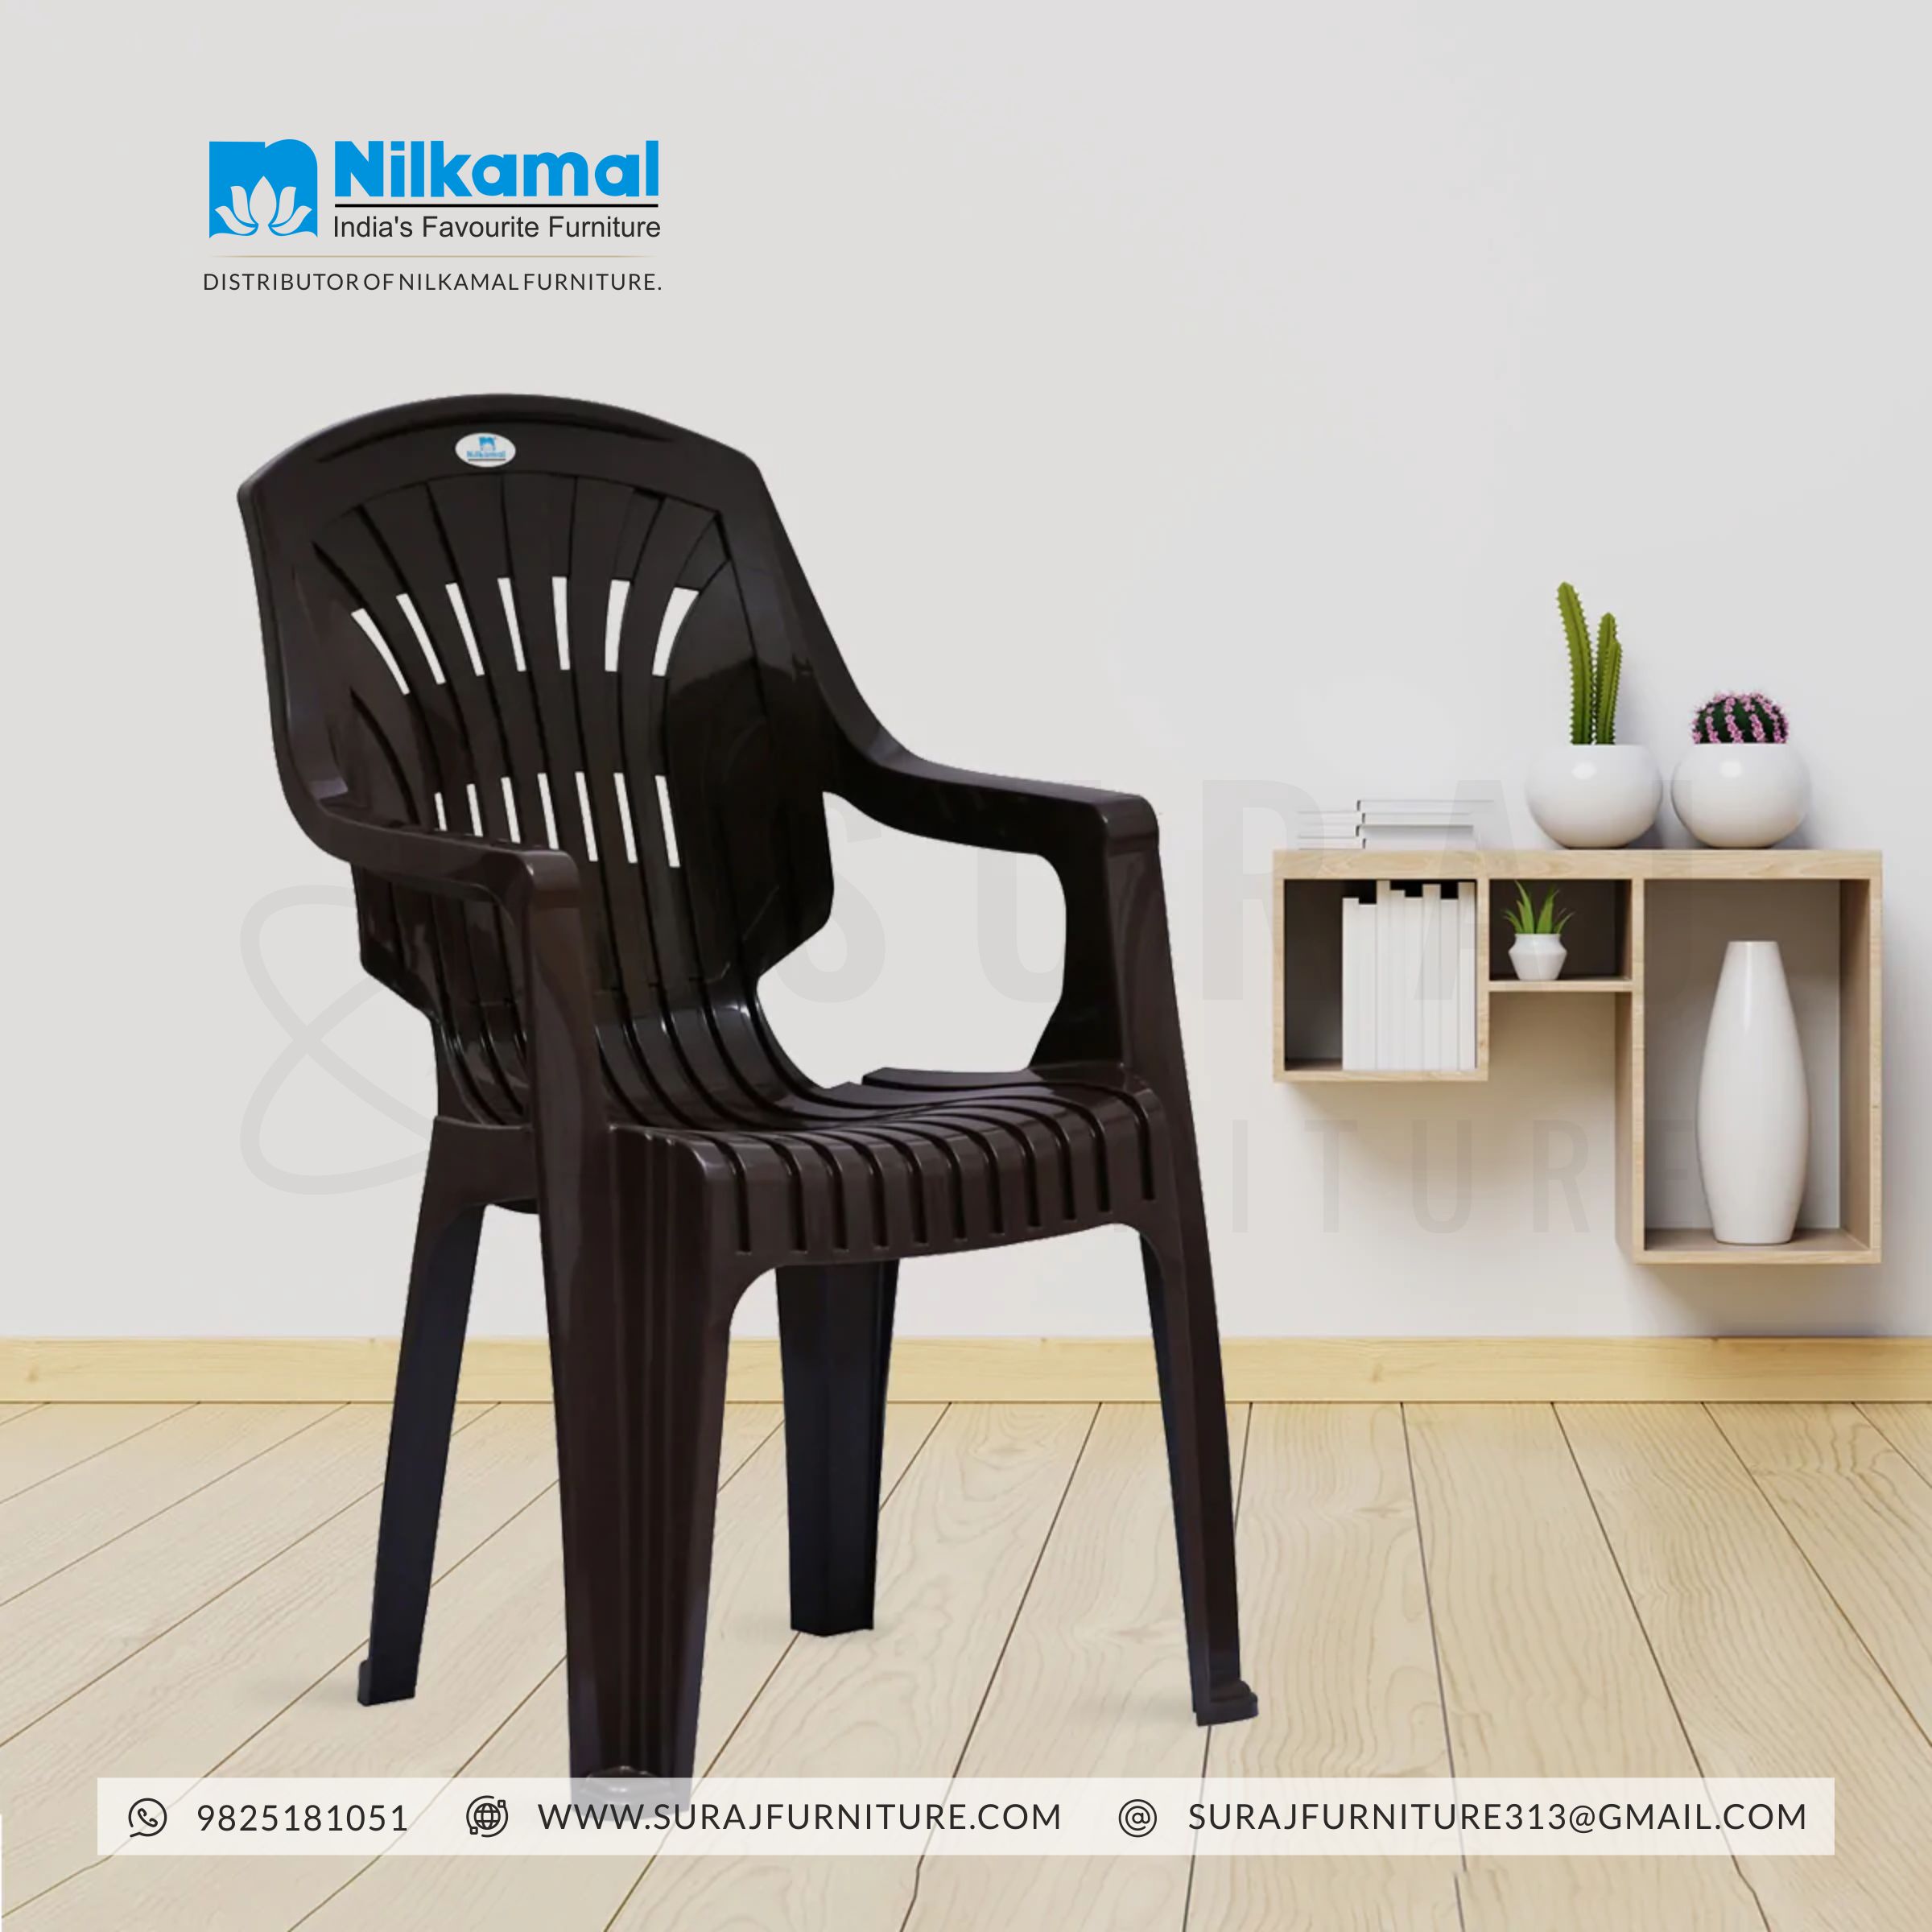 Nilkamal Plastic Chair wholesale dealer